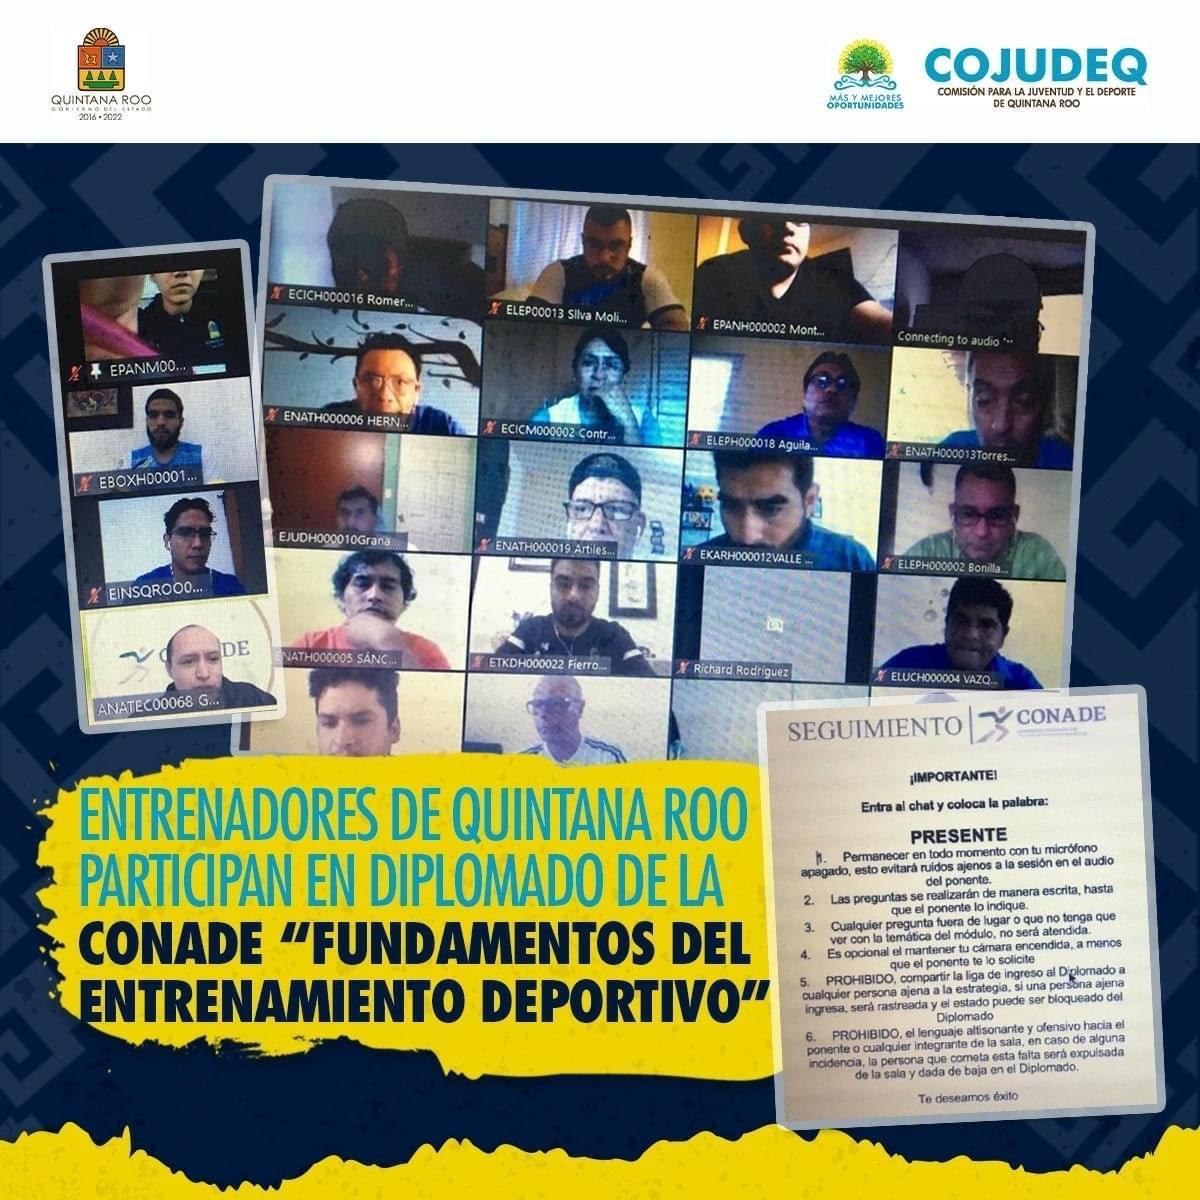 Entrenadores de Quintana Roo participan en Diplomado de la CONADE “Fundamentos del Entrenamiento Deportivo”